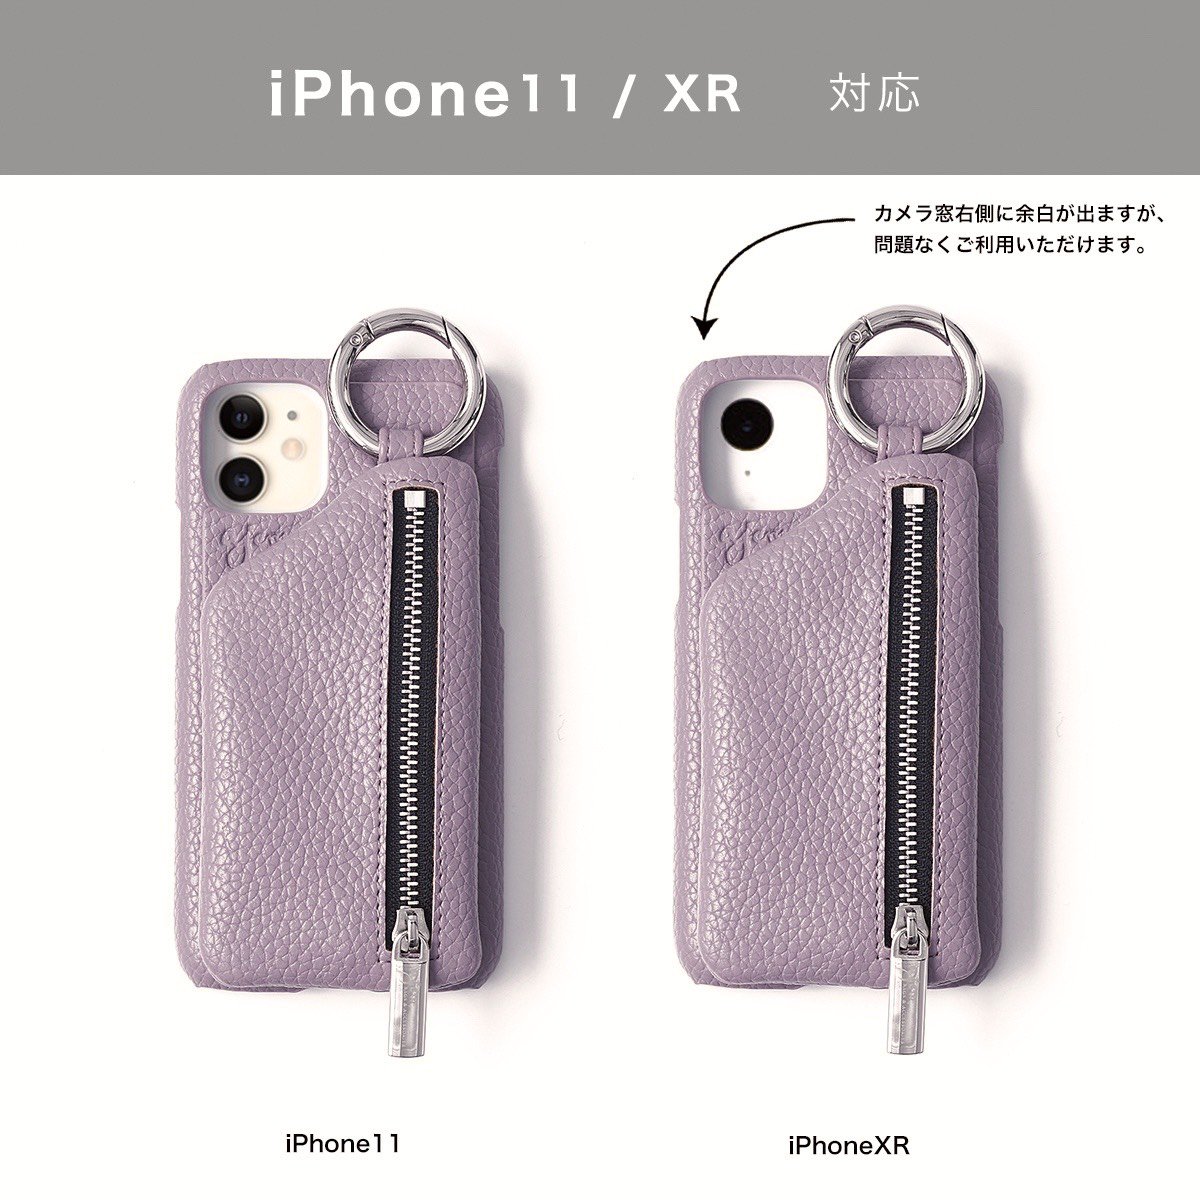 ひも無し】 iPhoneXR.11共通対応 / purple (発送はご注文から3営業日